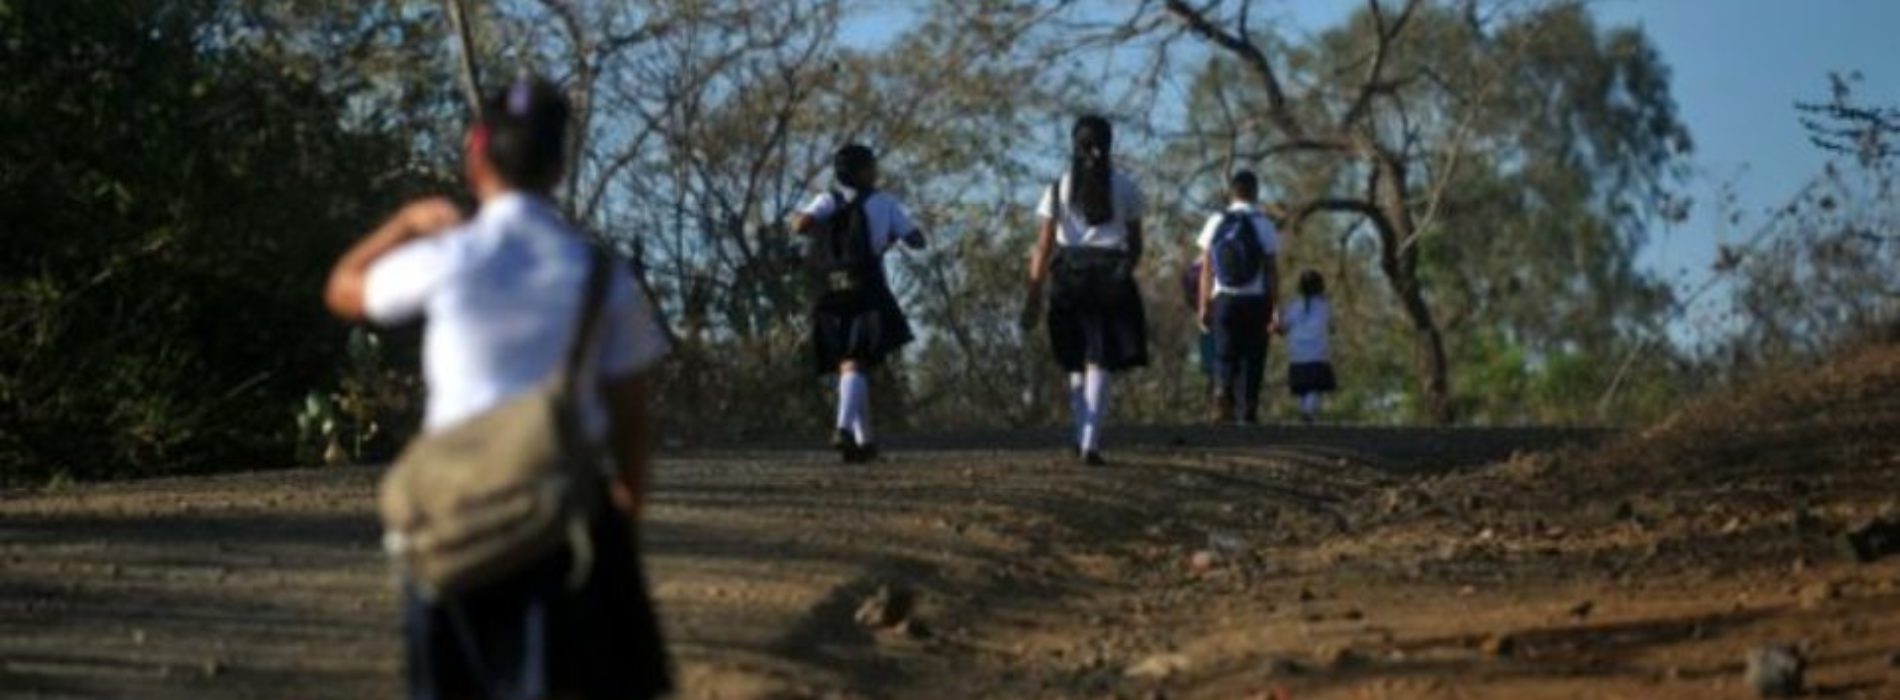 Juez ampara a una niña en contra de autoridades educativas y
ordena despedir a por lo menos 60 maestros en Oaxaca